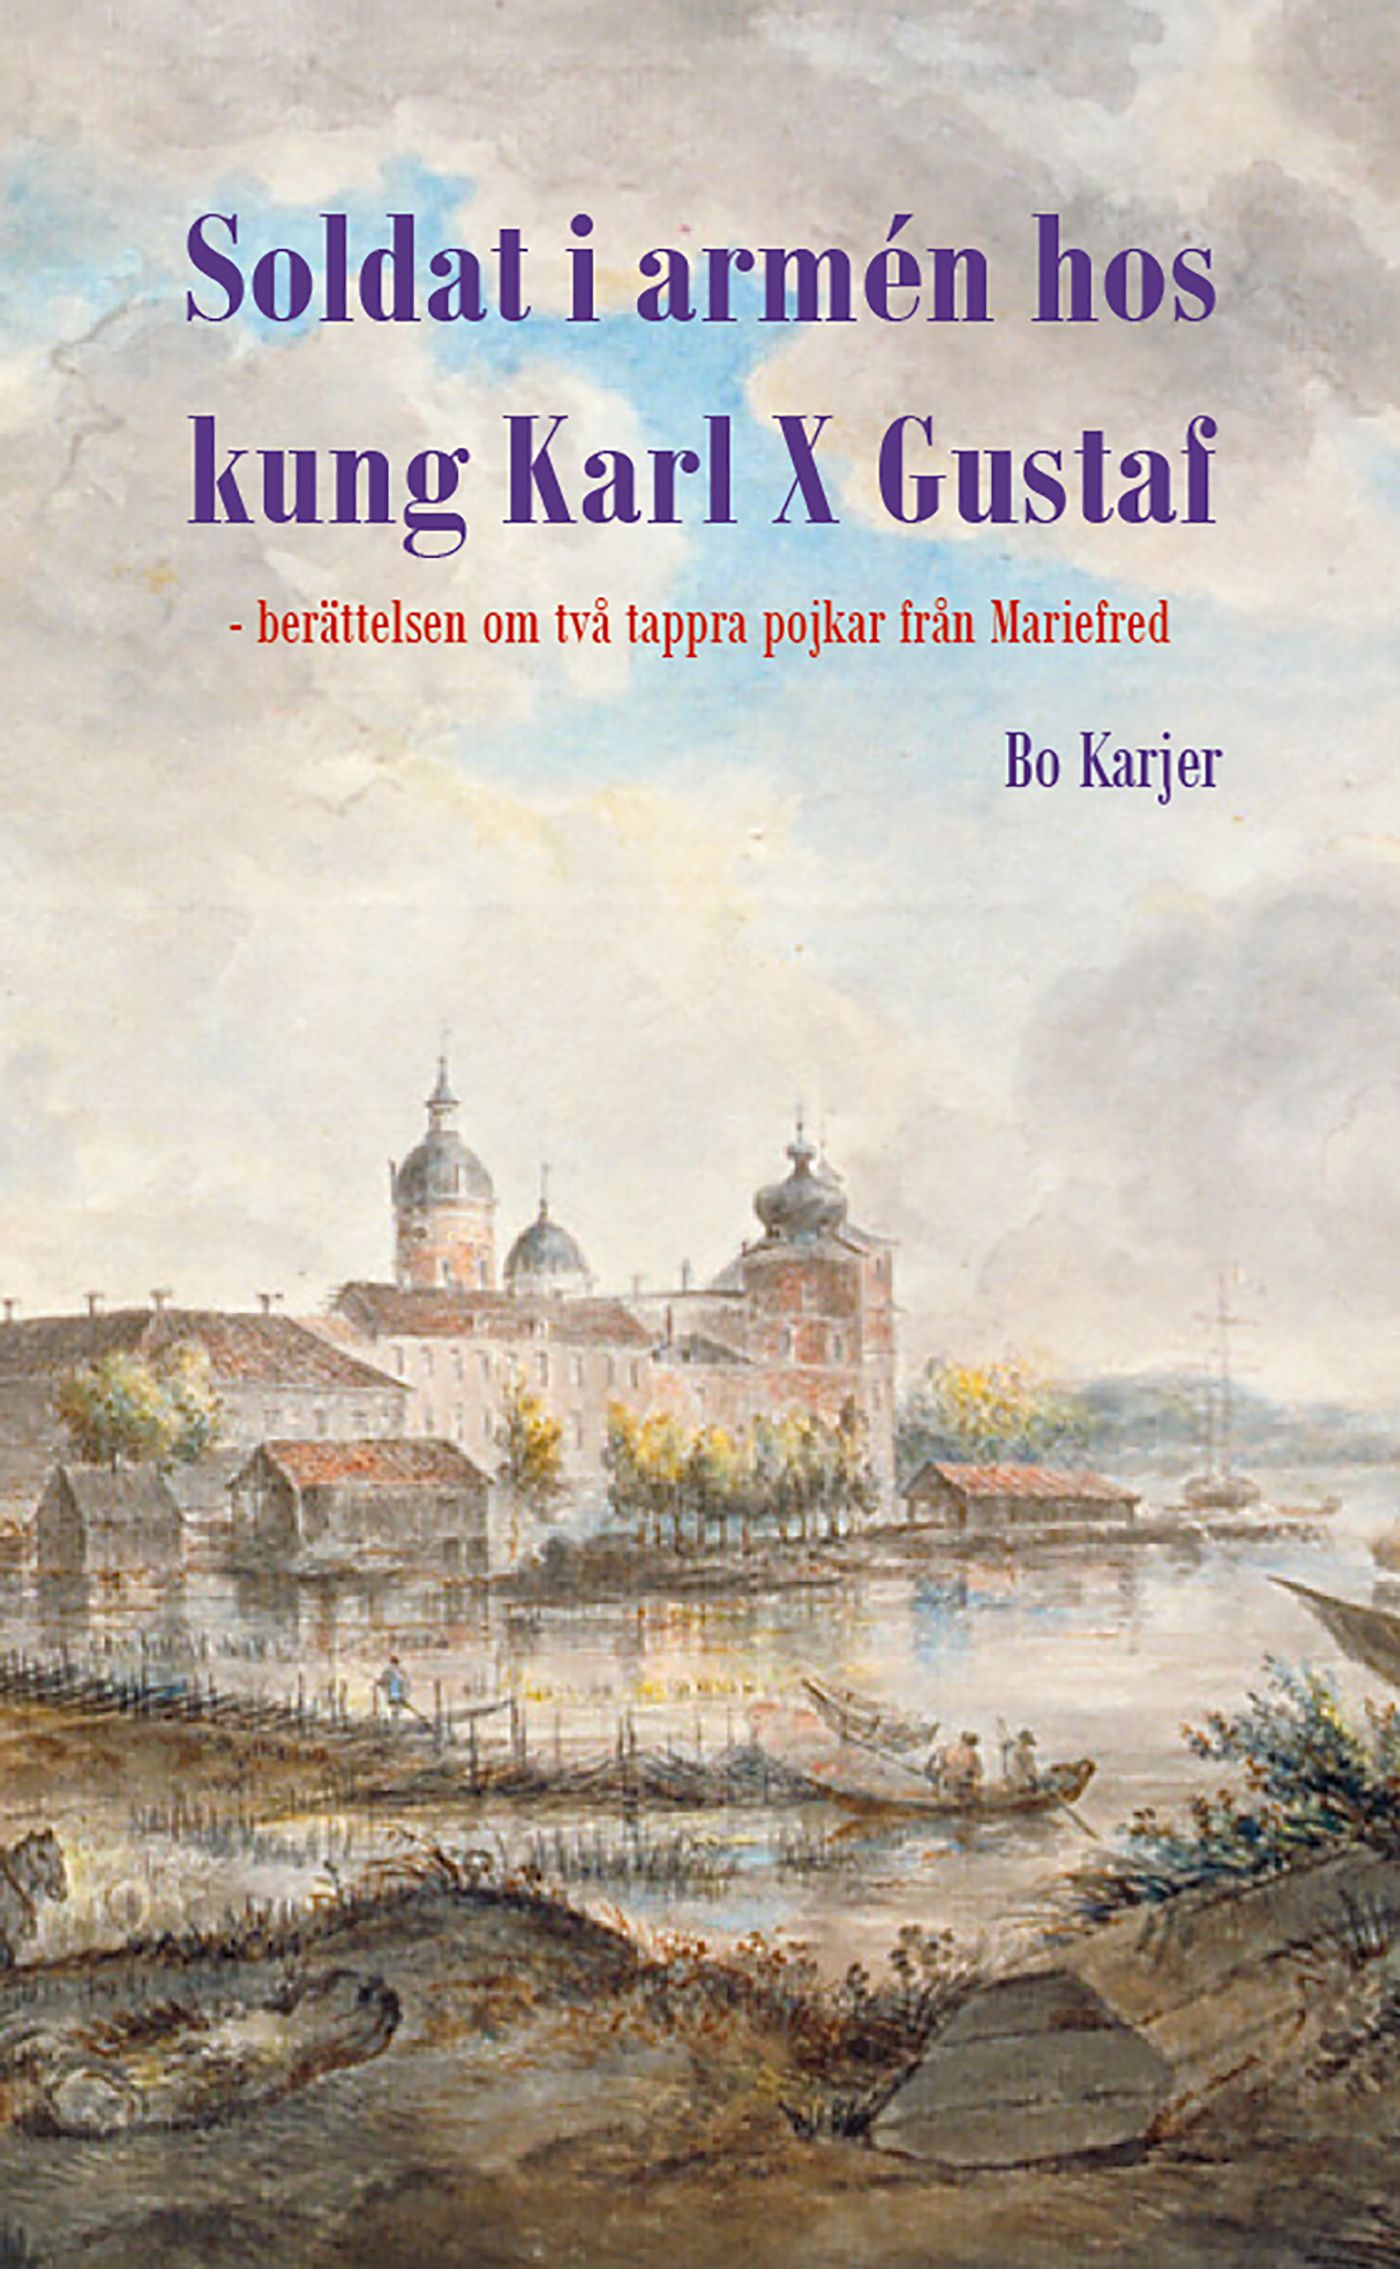 Soldat i armén hos kung Karl X Gustaf, e-bog af Bo Karjer